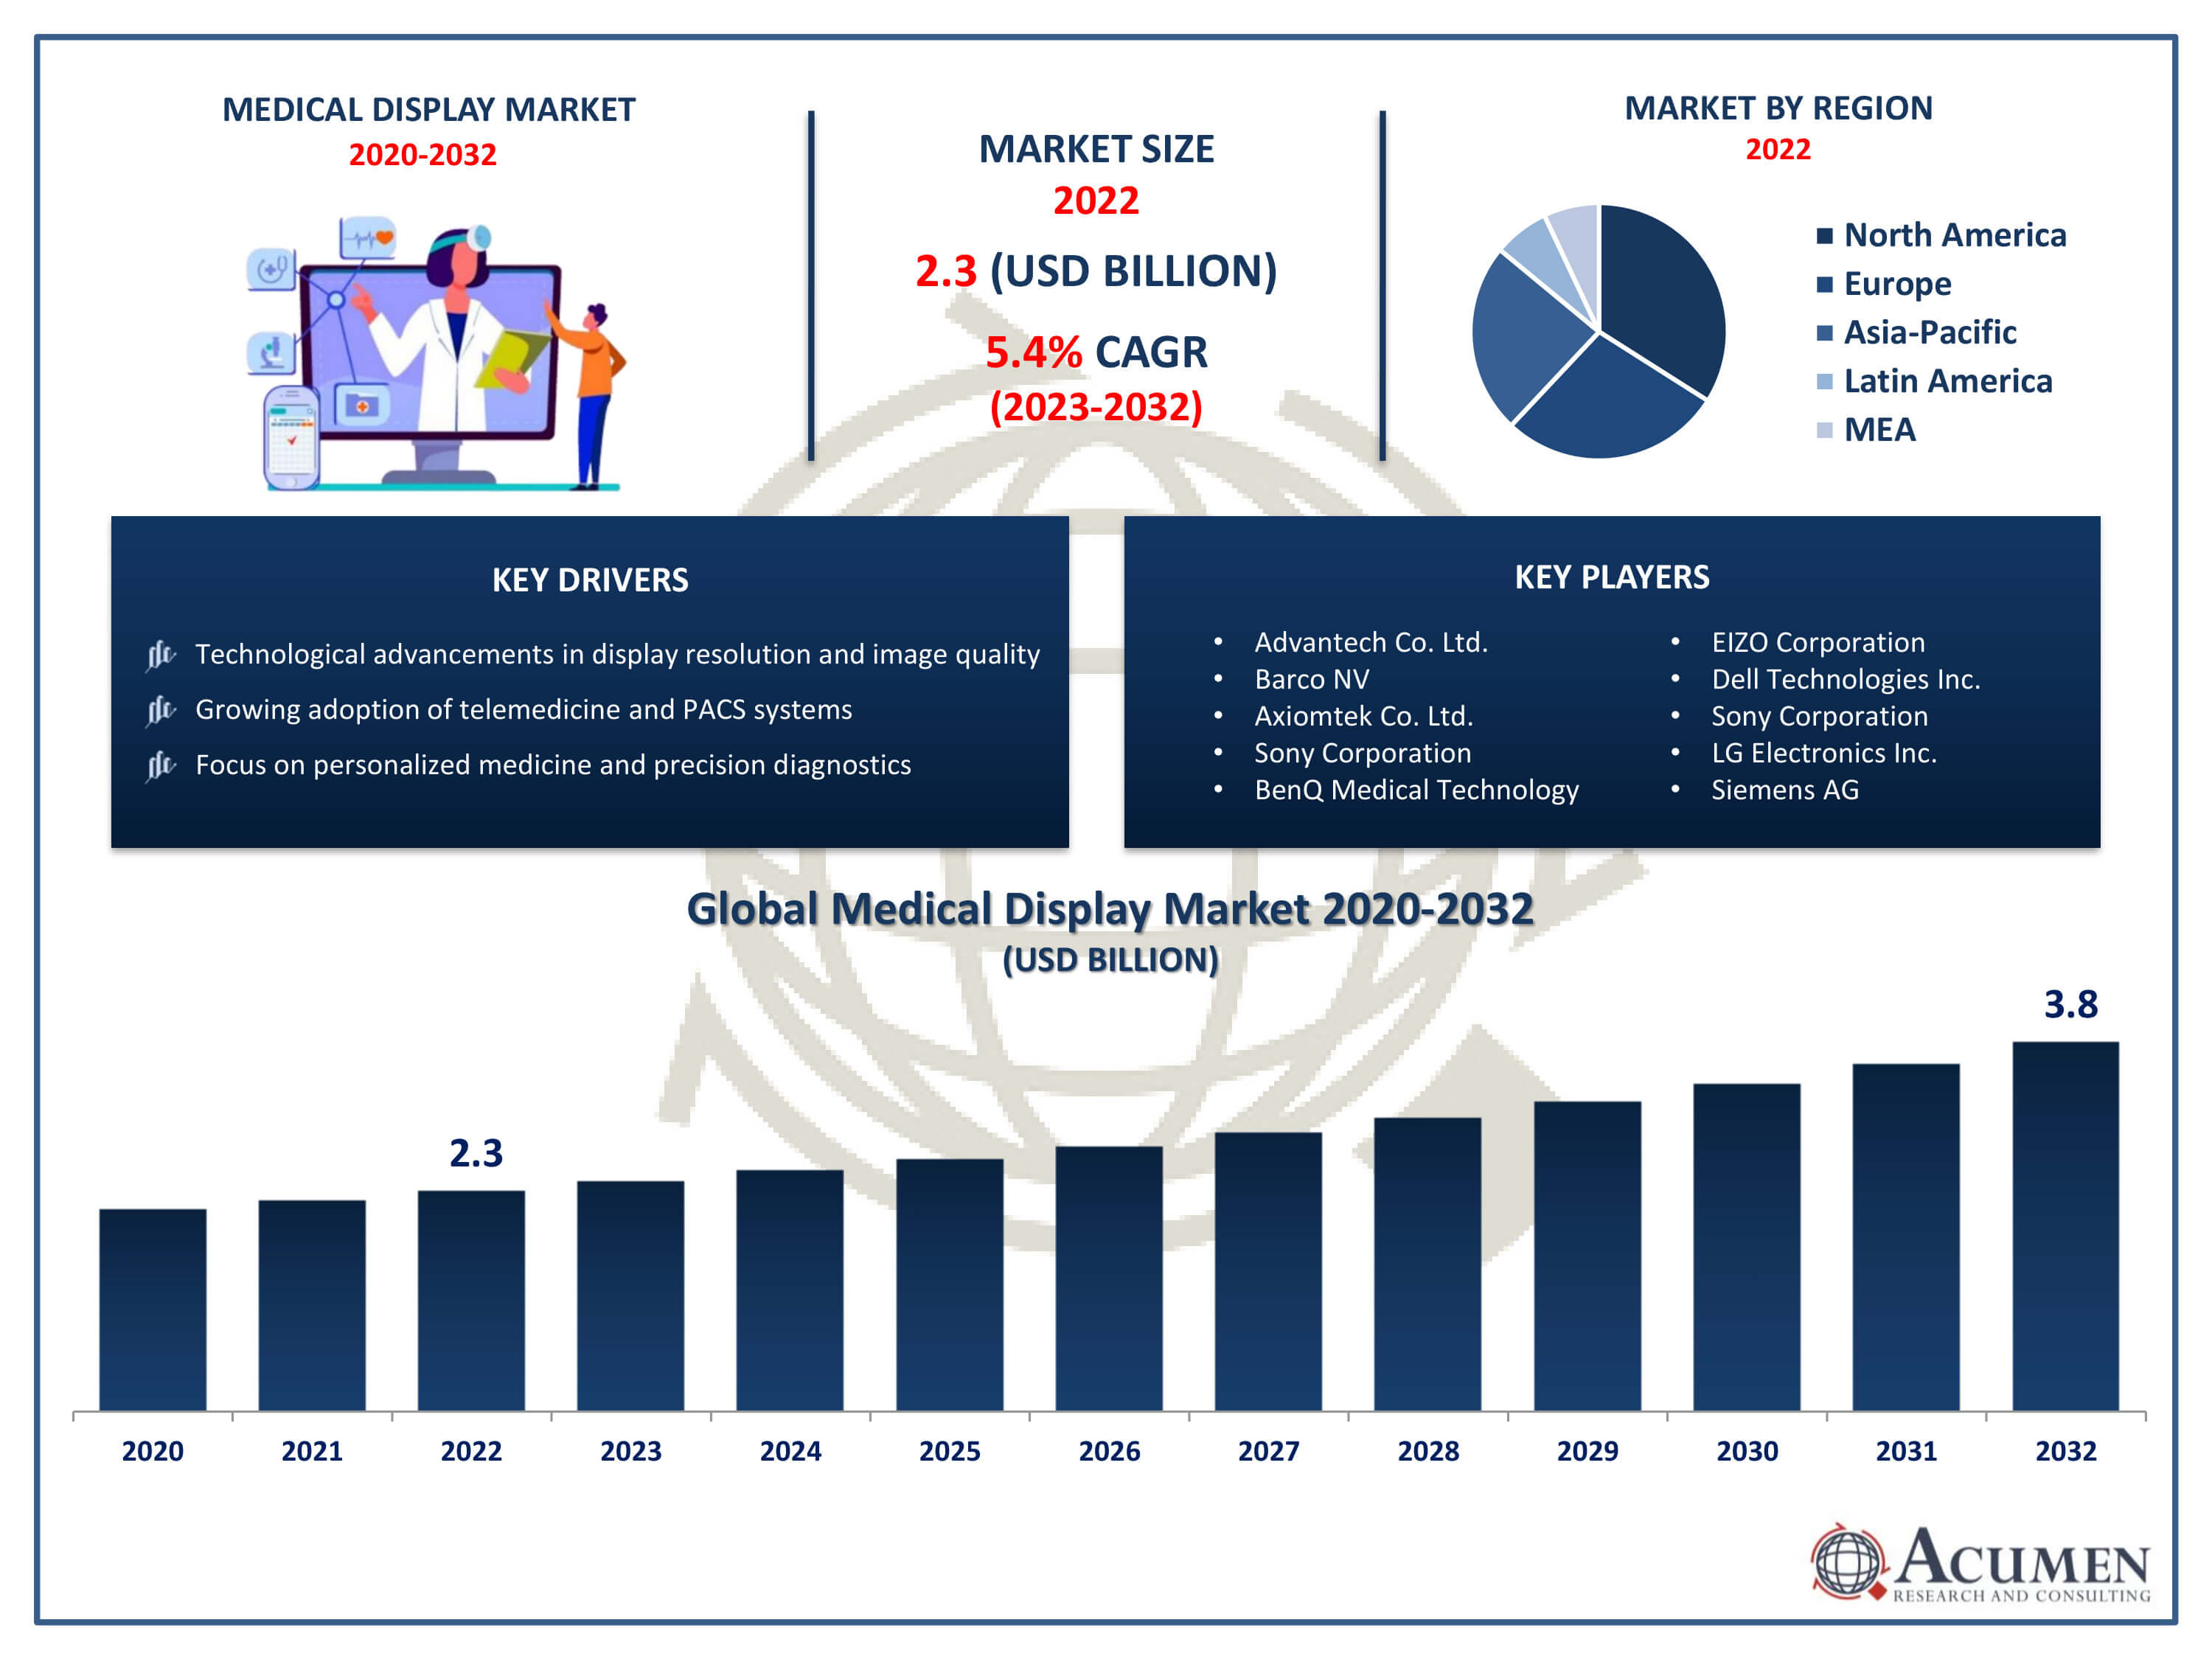 Medical Display Market Trends